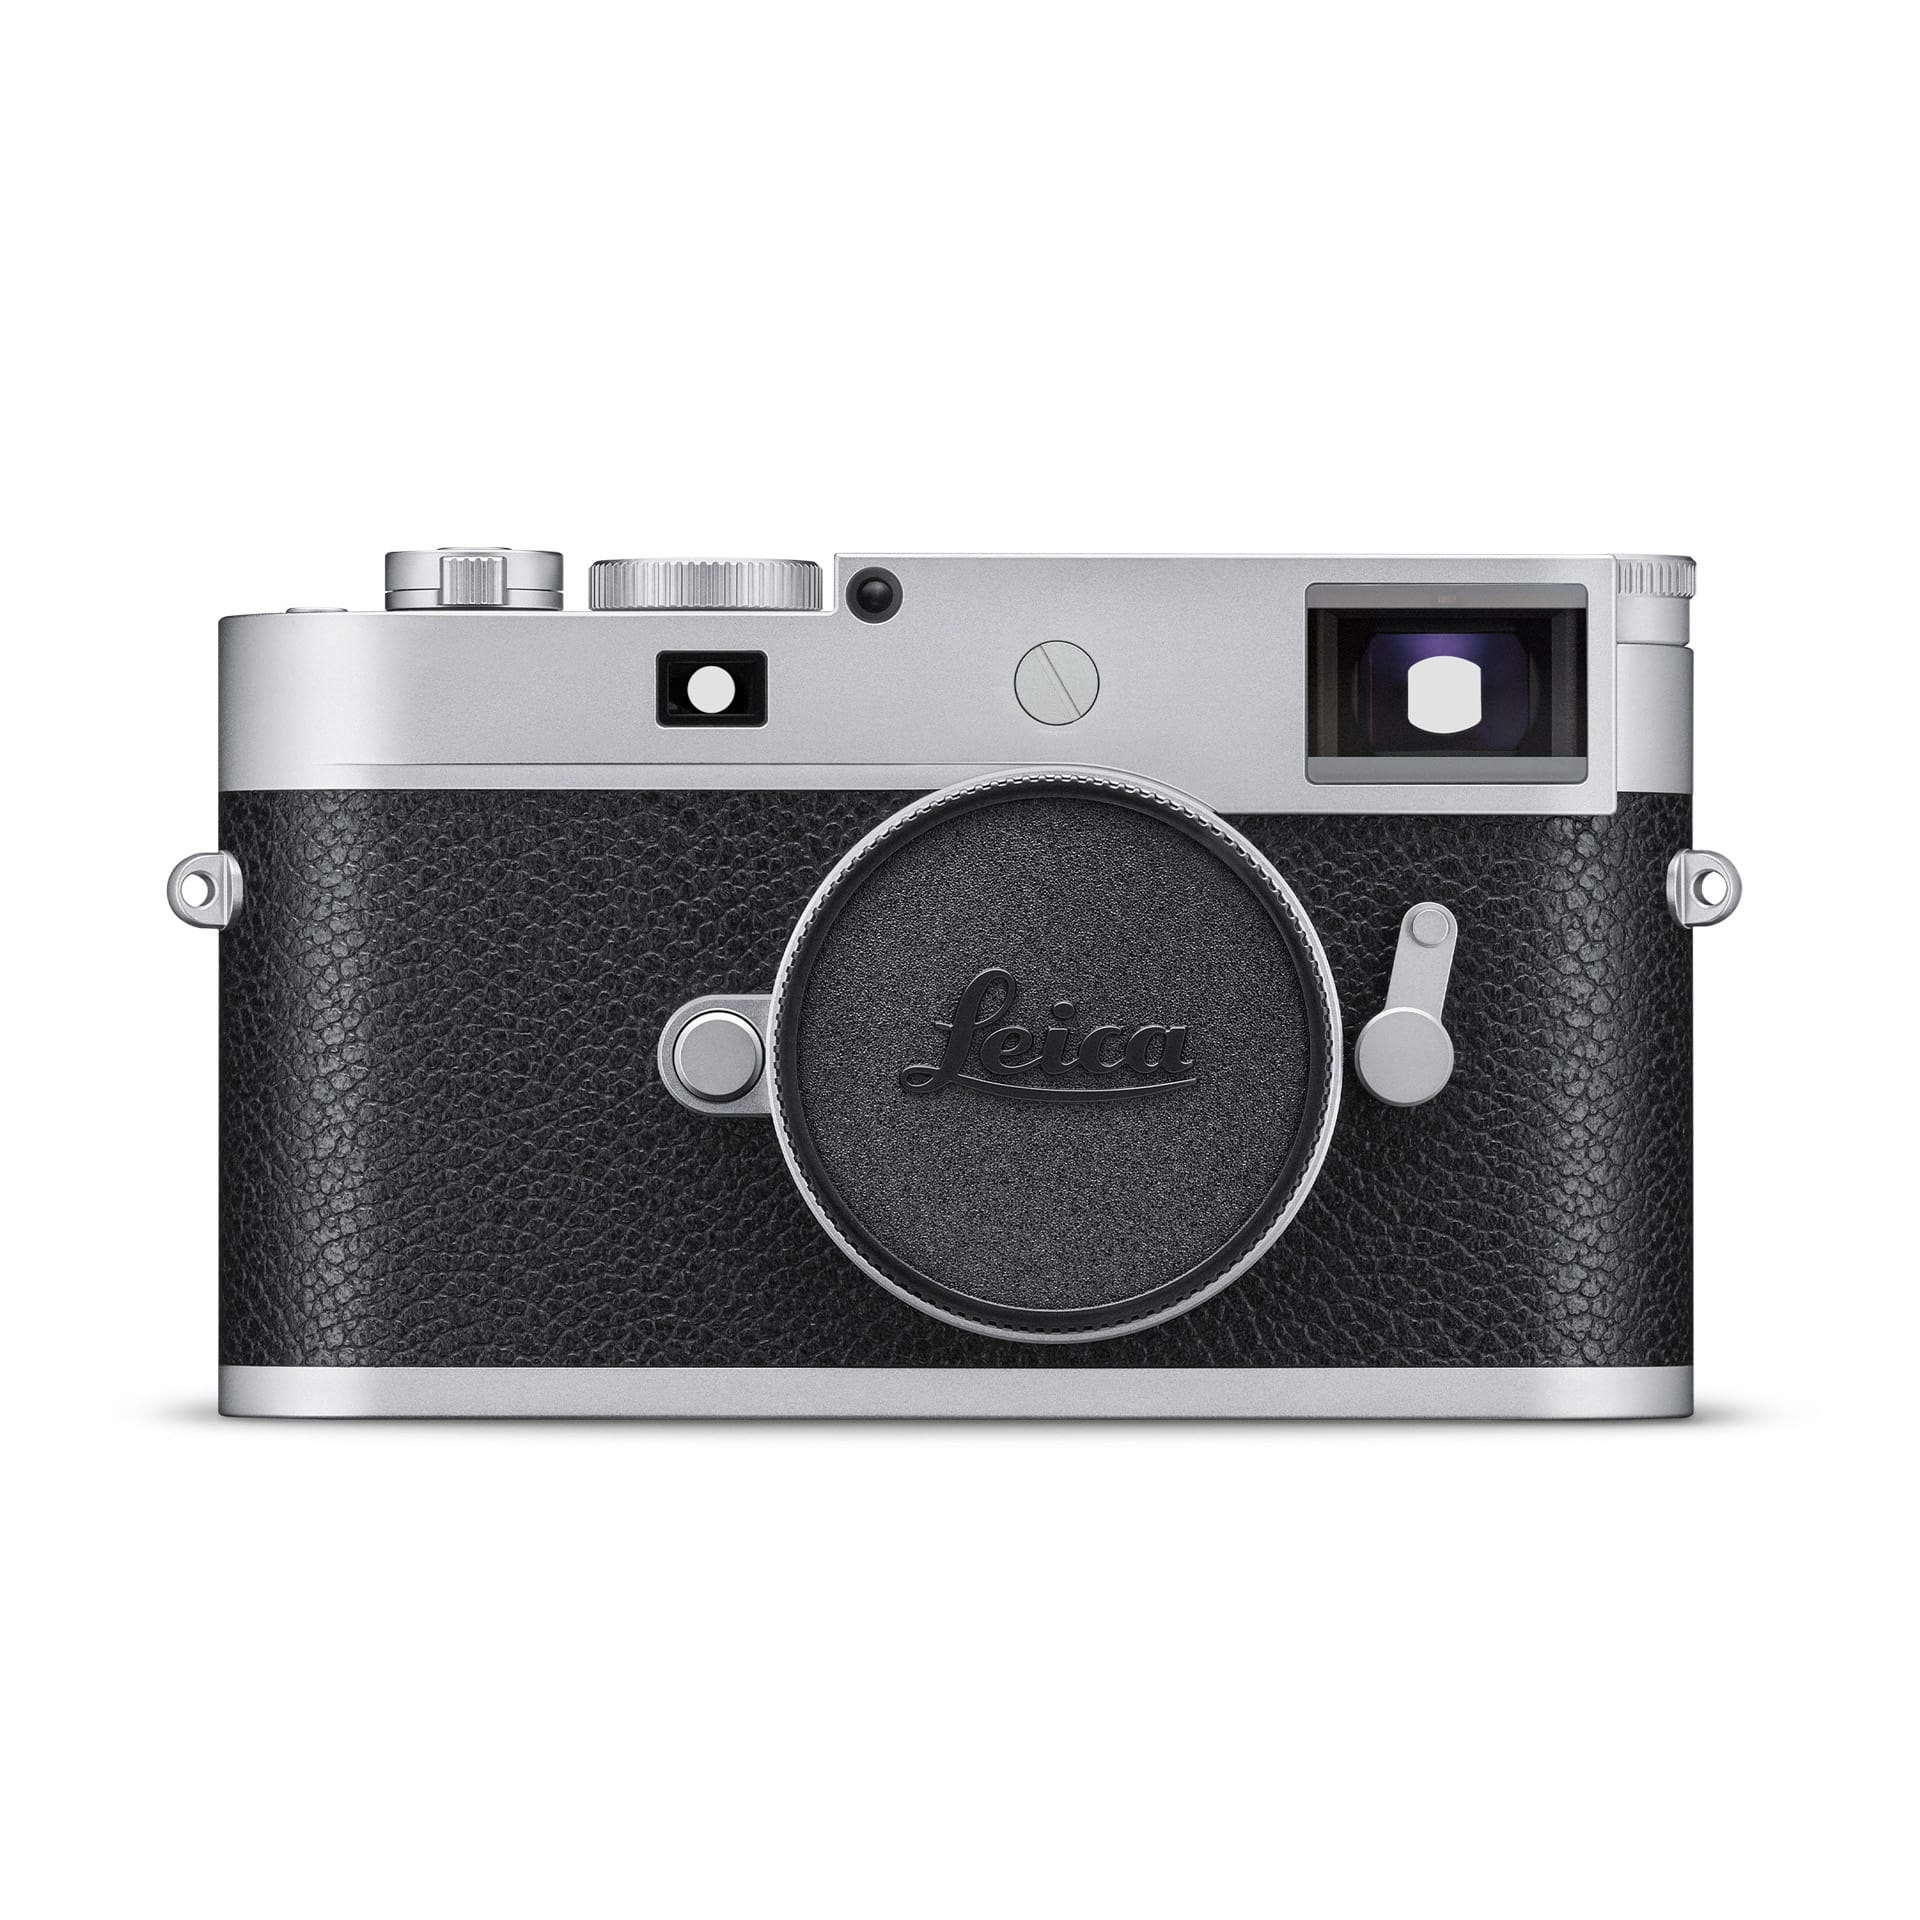 Leica ライカ M11用 サムレスト ブラックカメラ